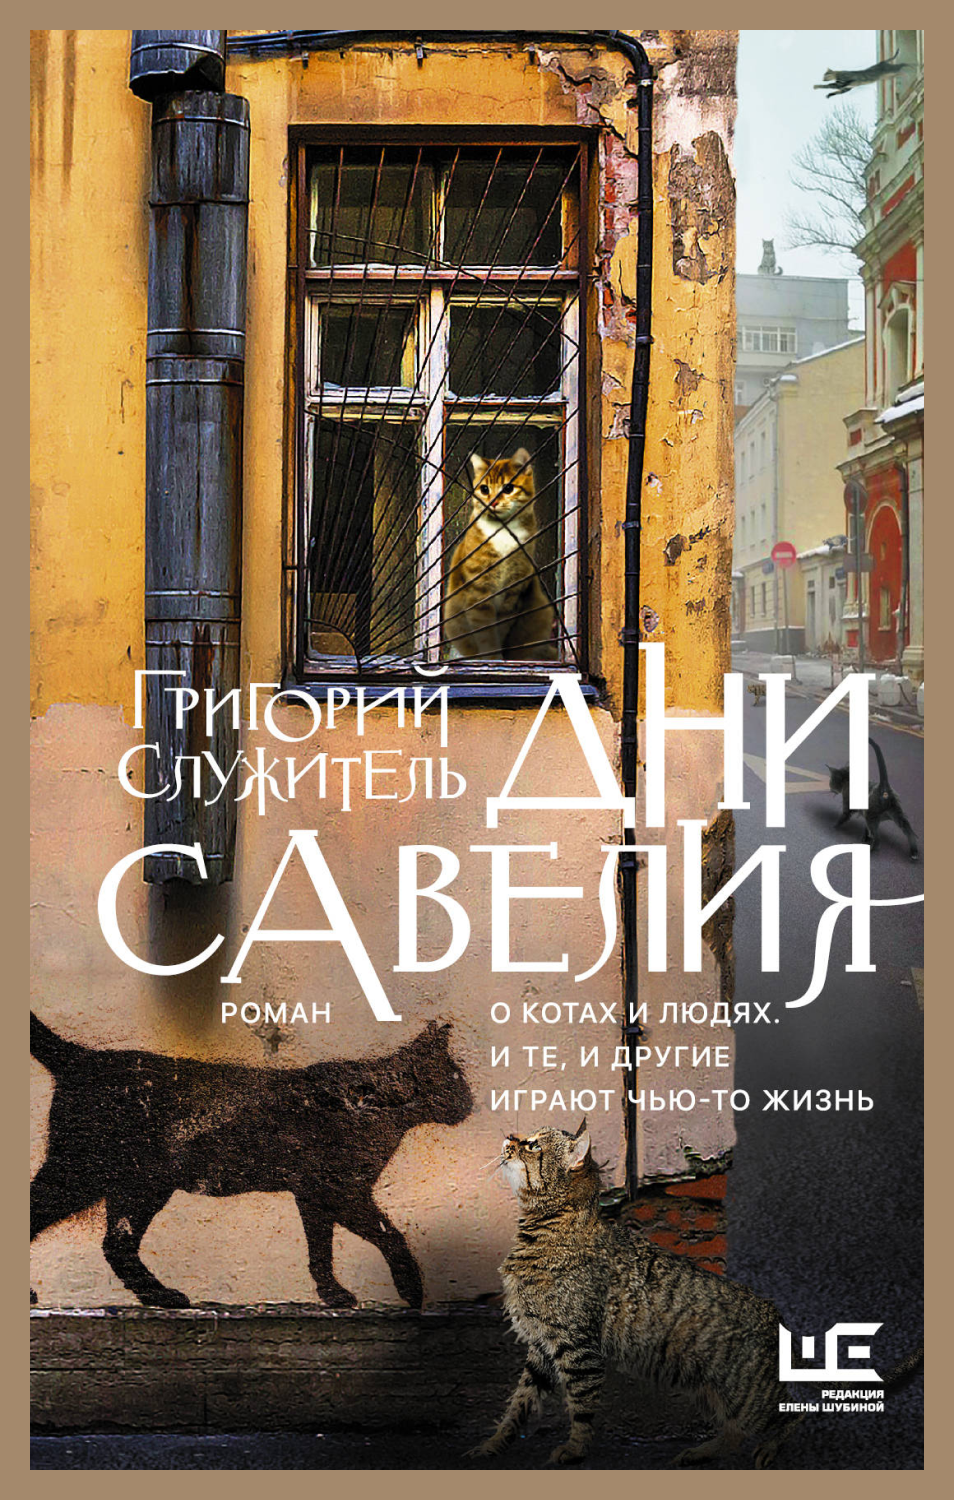 «Риф», «Сердце Пармы» и еще 8 книг, действие которых разворачивается в разных городах России (фото 1)